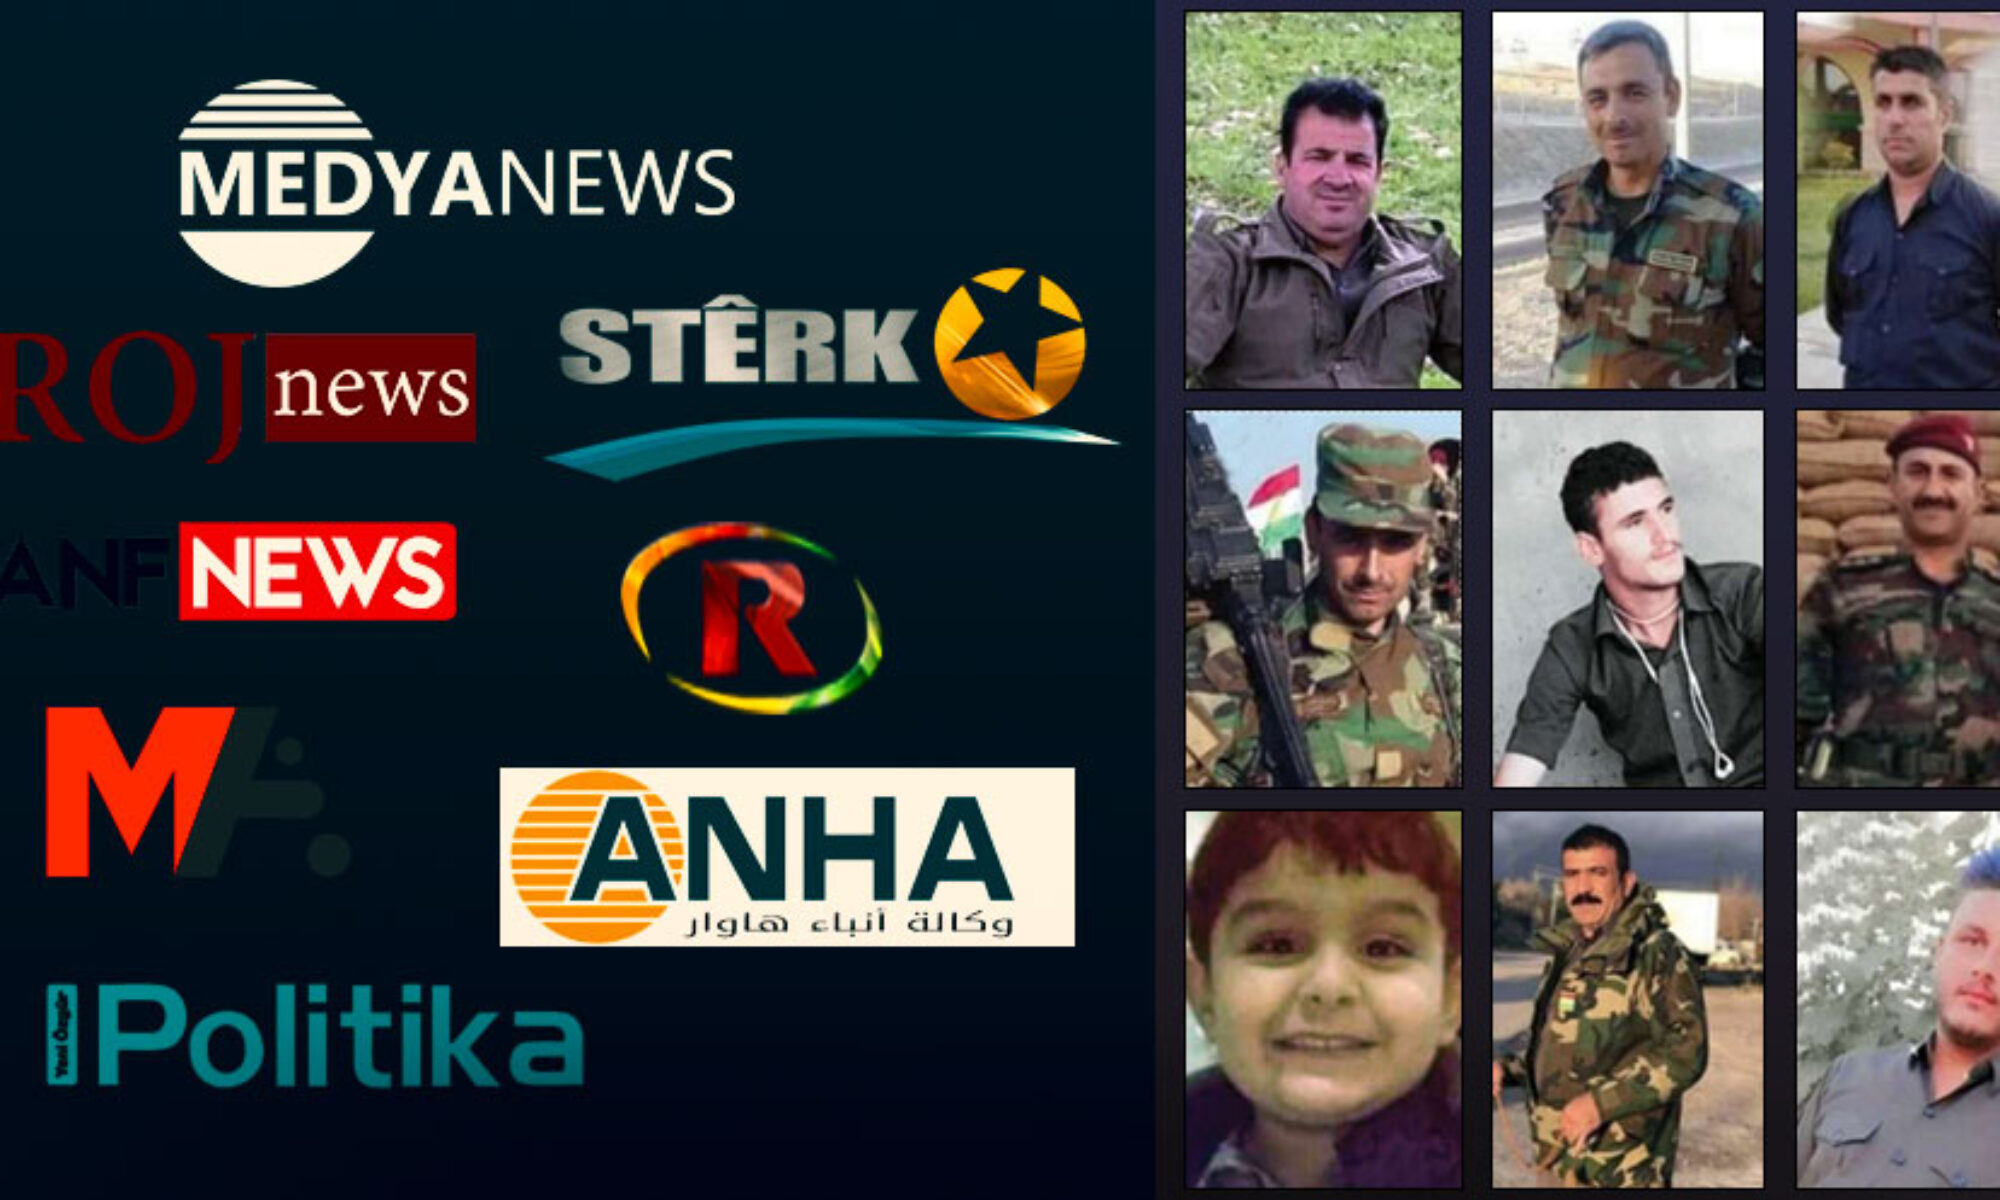 PKK’den Xidircice köyünde şehit düşen 10 Peşmerge’ye hakaret Xidircice Mahmur, Karaçox, ANF, Özgür Politika, Cemil Bayık, PKK medyası, Roj News, Seyit Evran, Haşdi Şabi, Irak